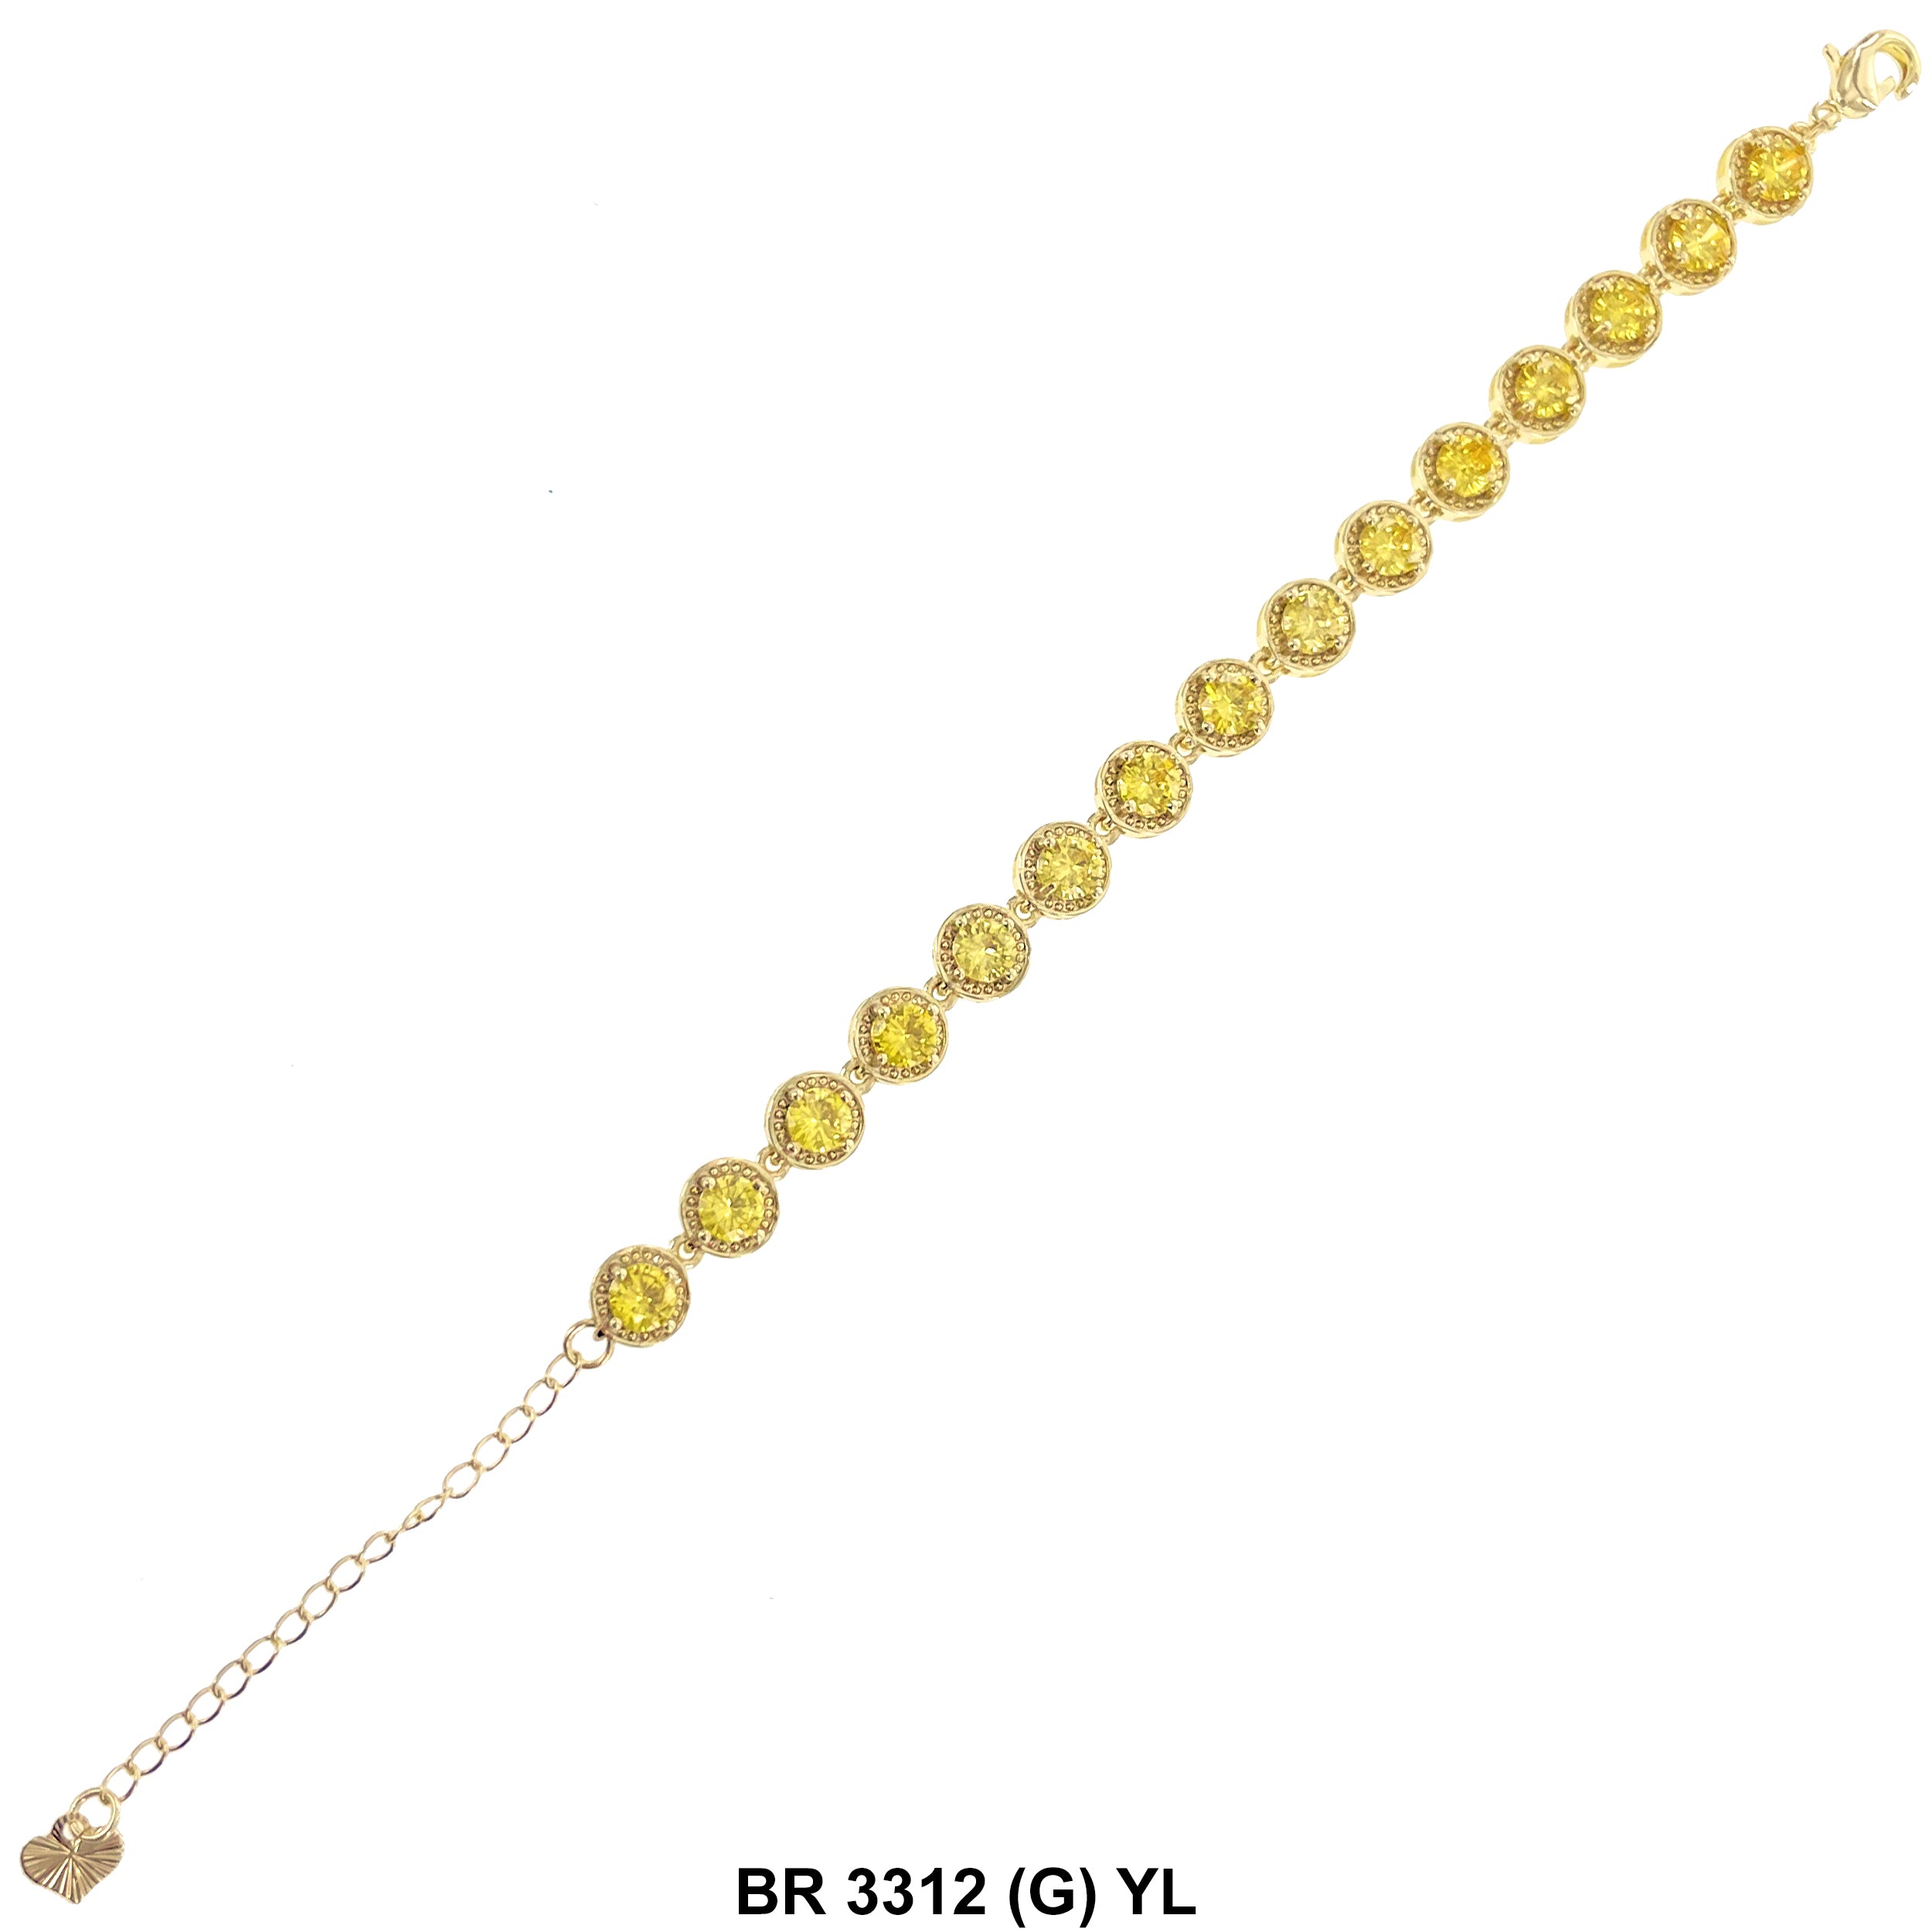 Cubic Zirconia Tennis Bracelet BR 3312 (G) YL